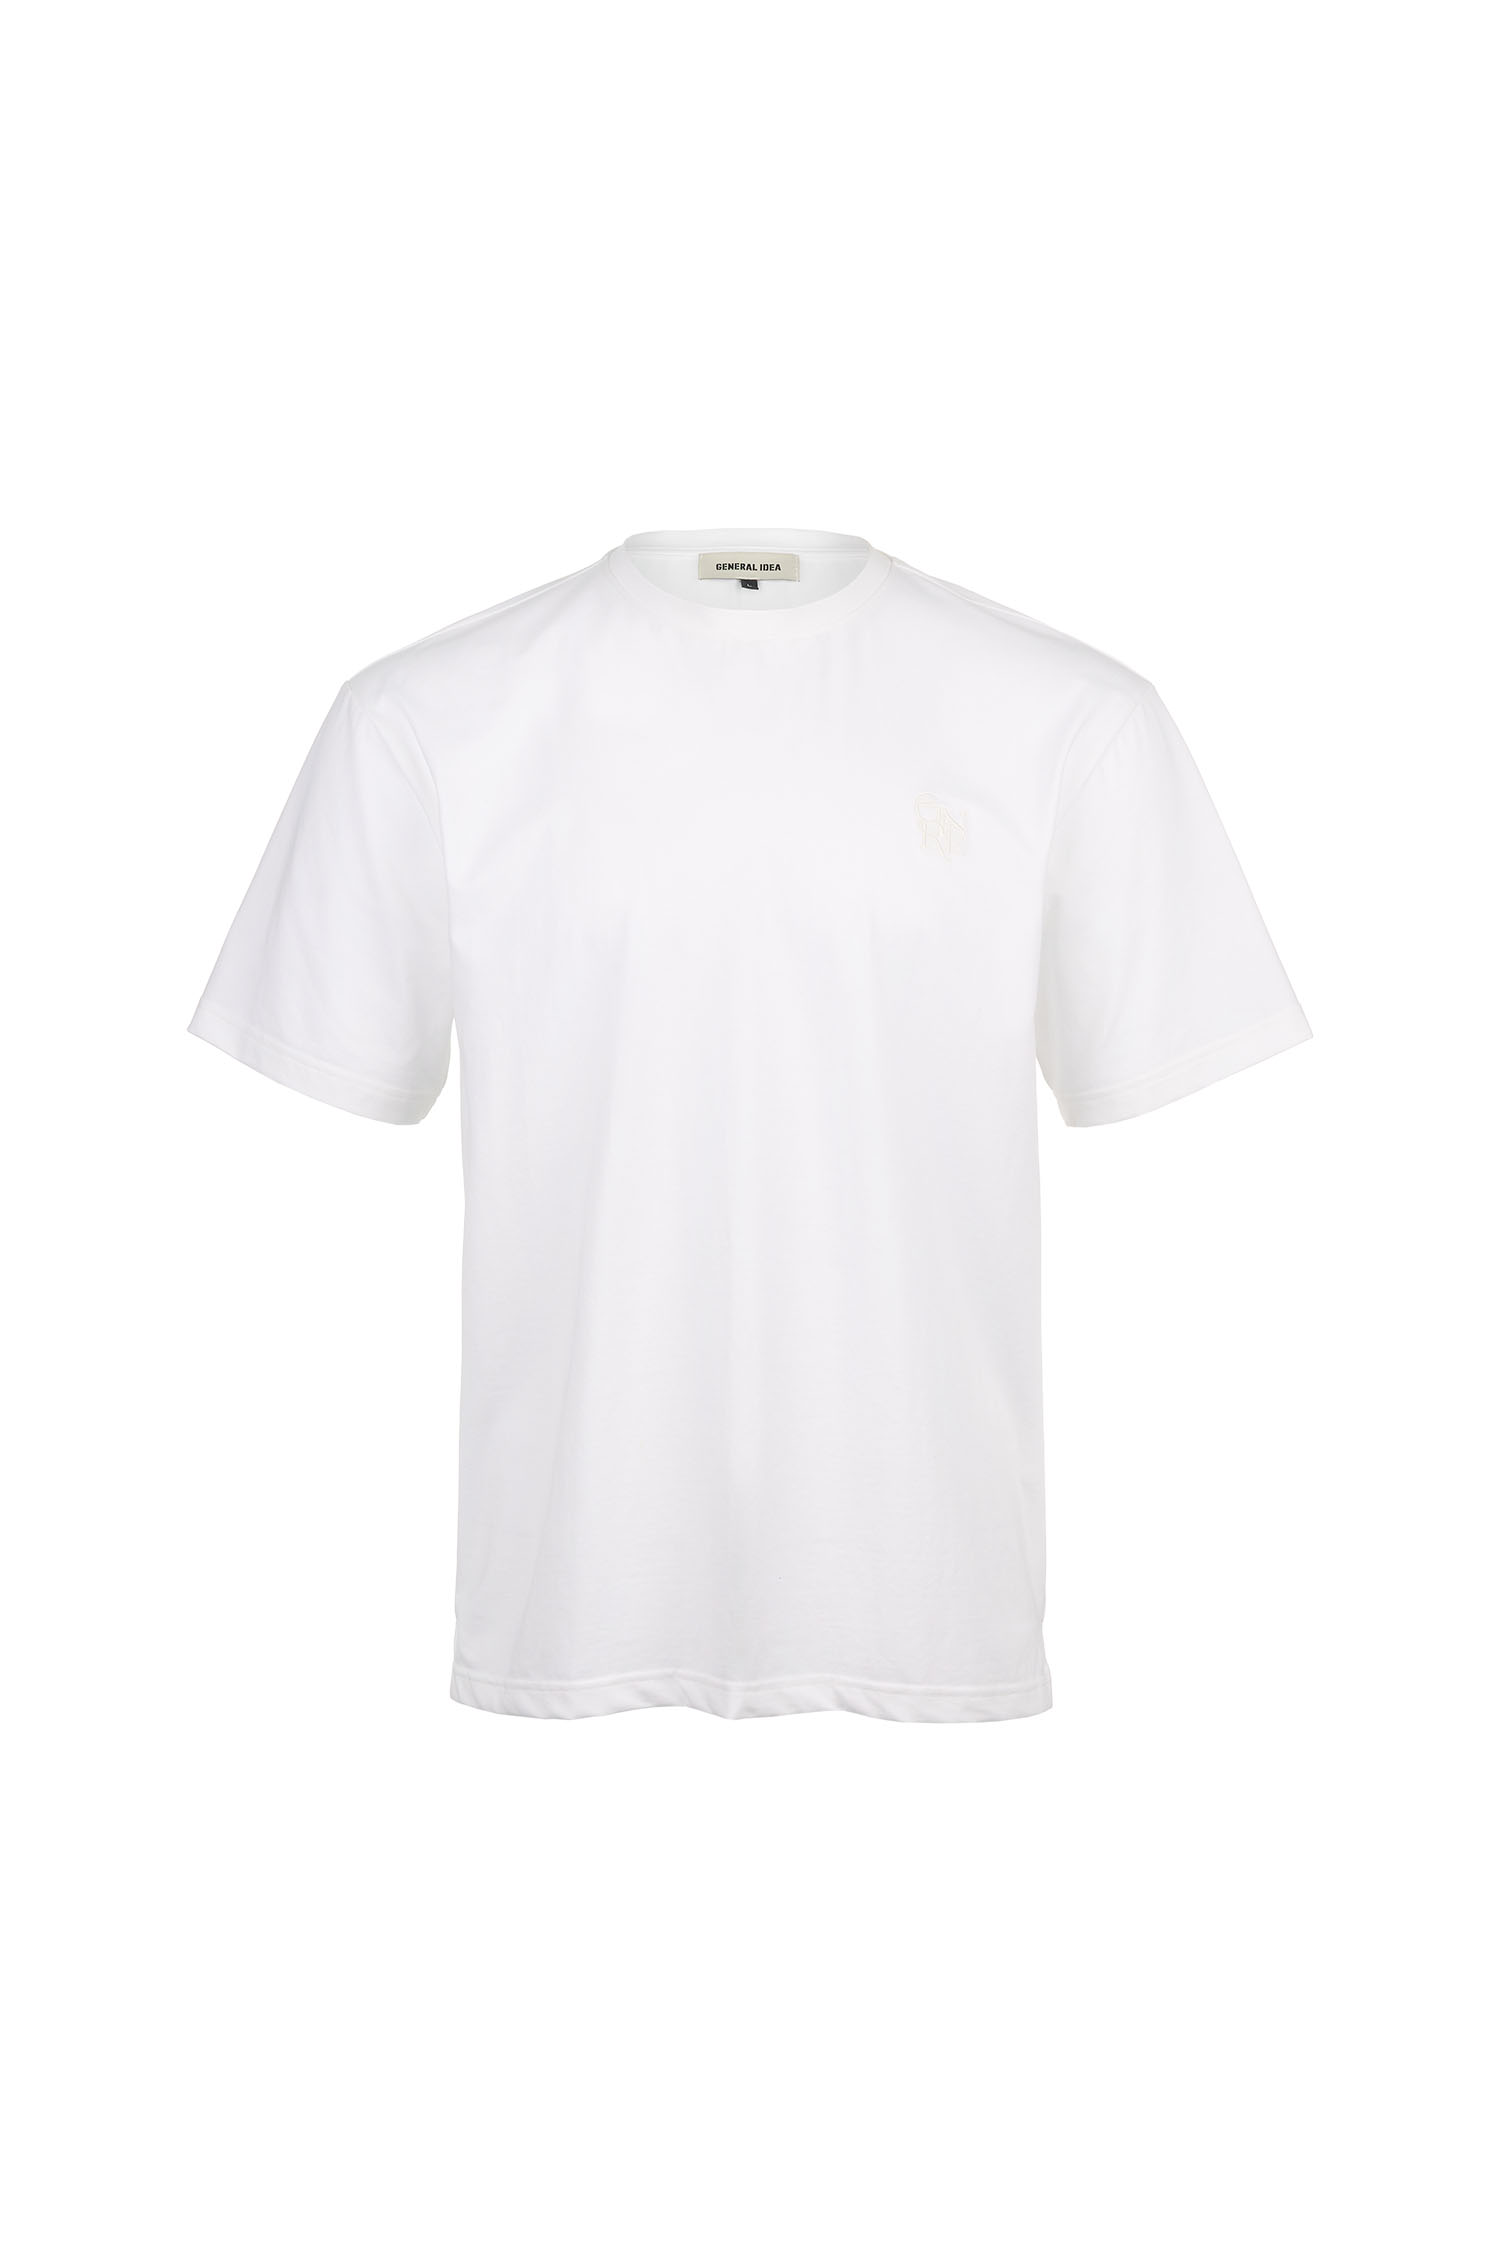 MAN GNRL 실켓 스판 티셔츠 [WHITE]